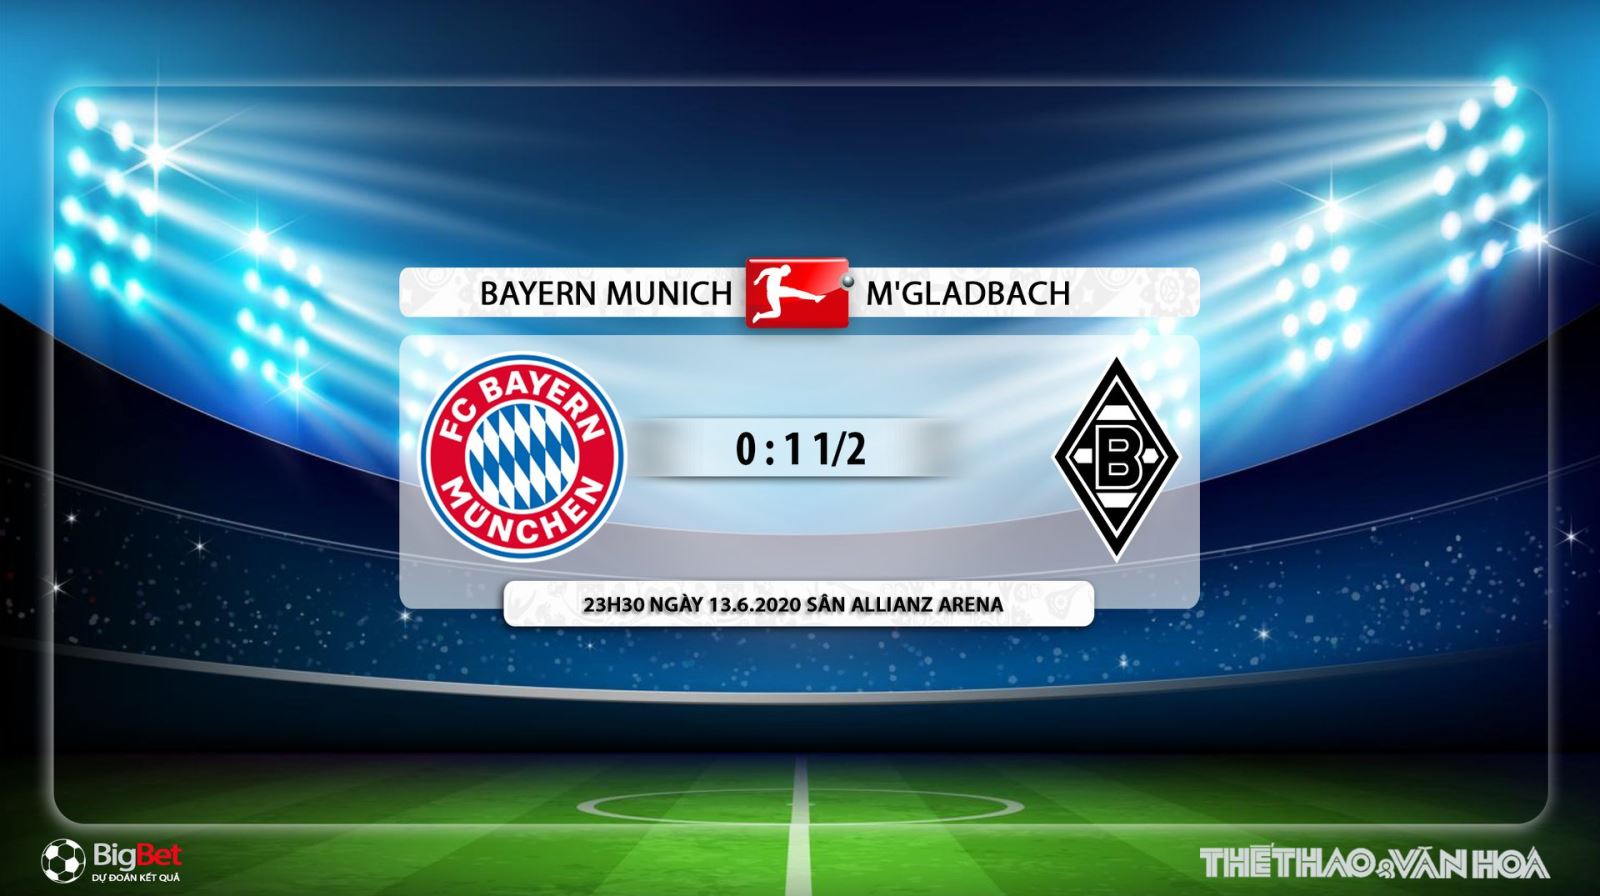 Bayern Munich vs Gladbach, kèo bóng đá, bóng đá, bong da, Bayern Munich, Gladbach, dự đoán, nhận định